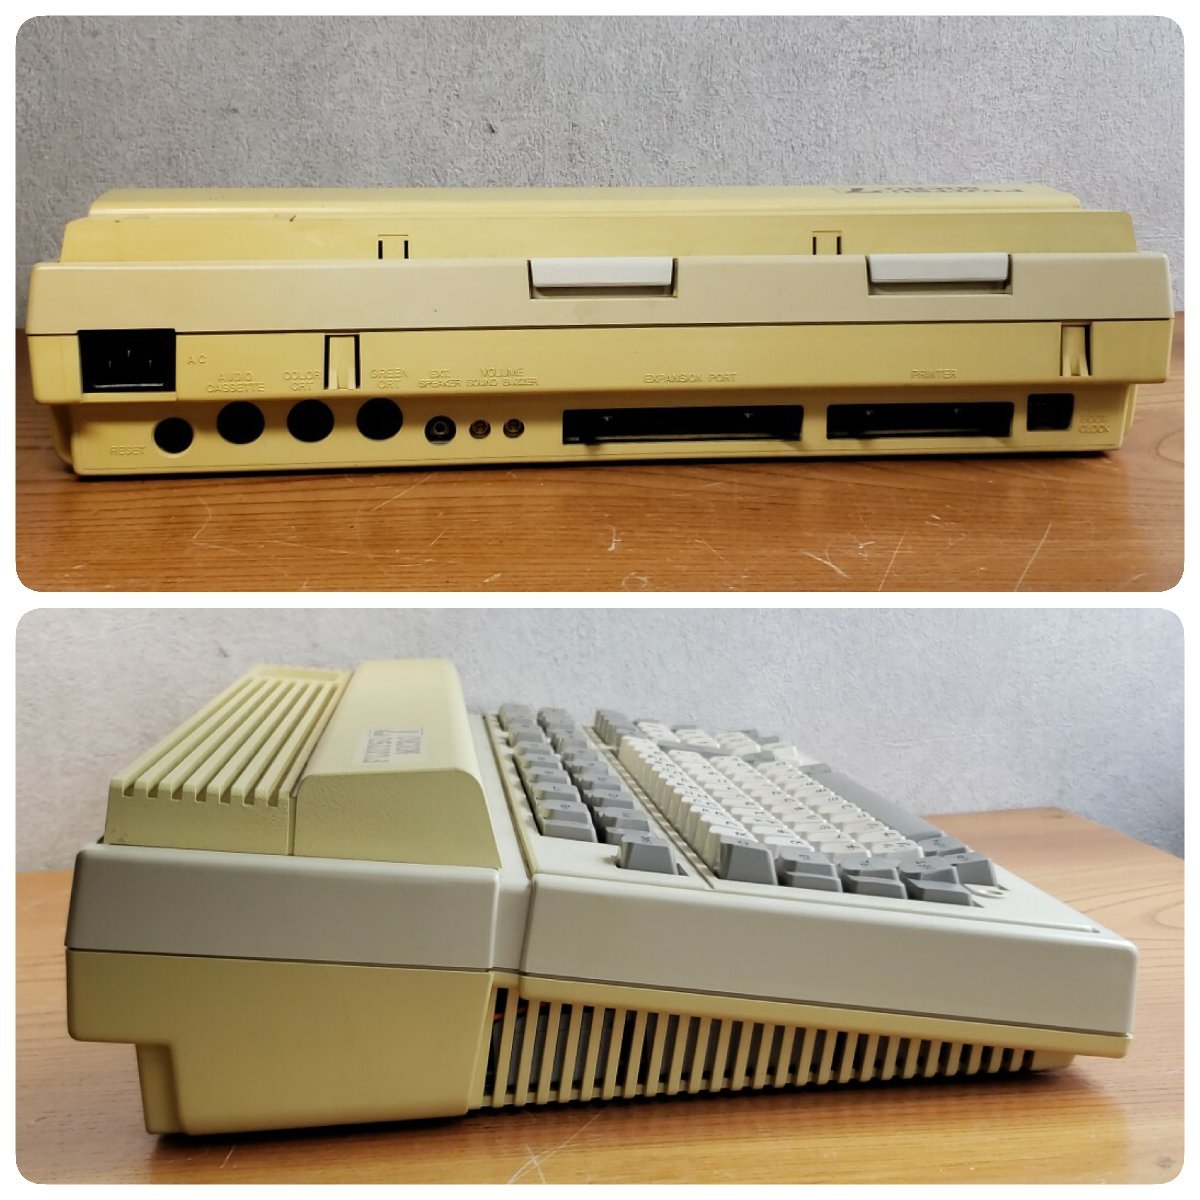  персональный компьютер FUJITSU MICRO7 MB25010 старая модель PC * Junk работоспособность не проверялась компьютер retro Vintage Fujitsu детали [100s1261]